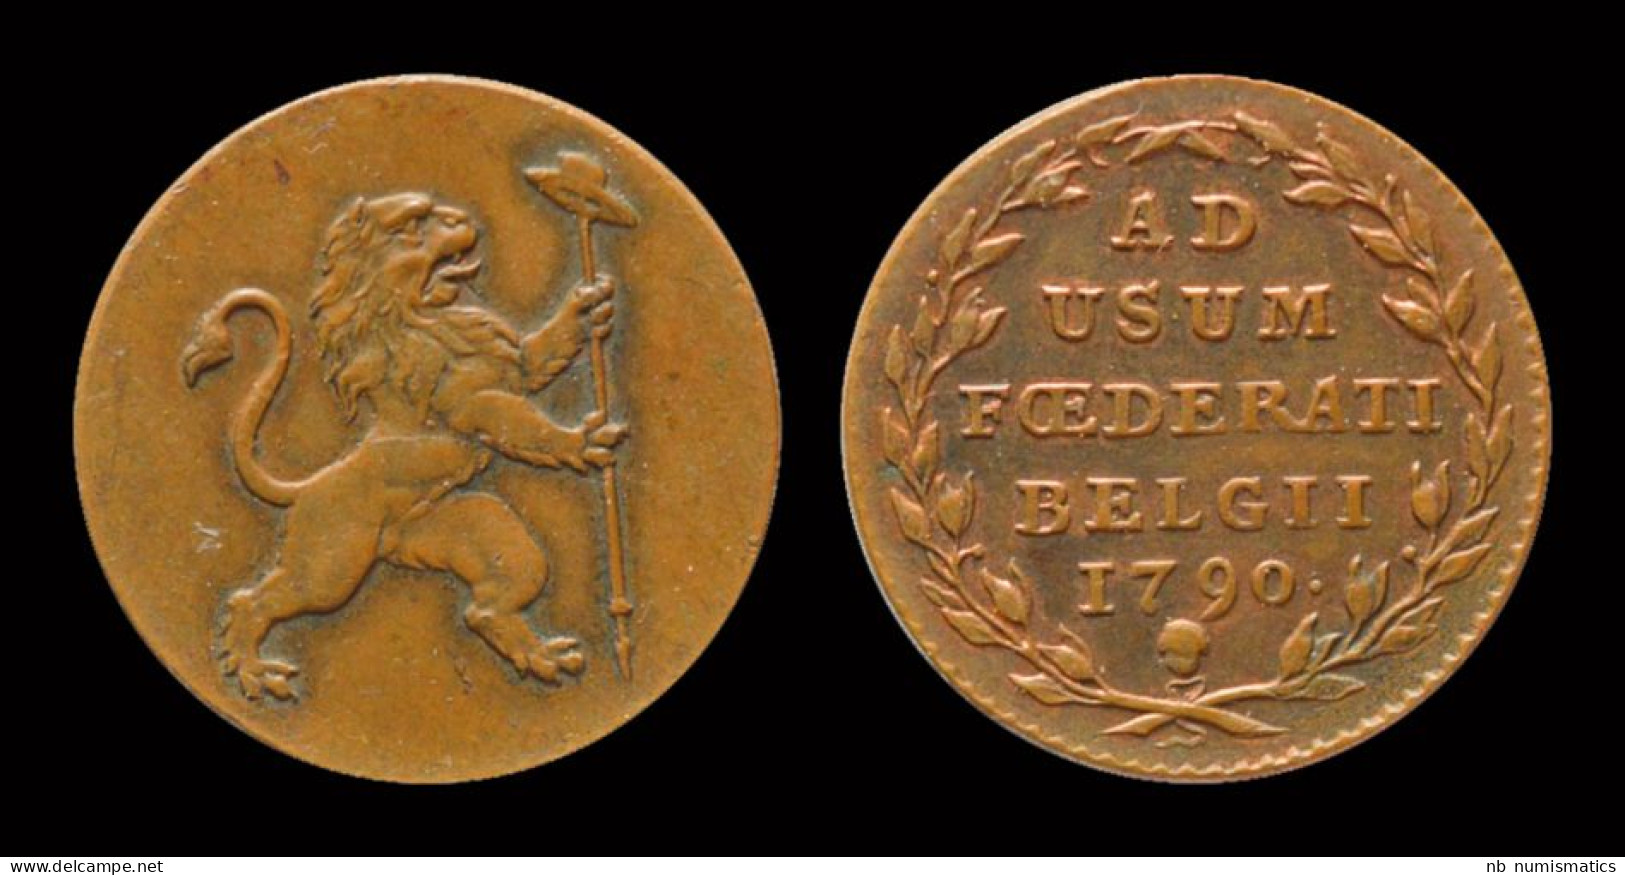 Austrian Netherlands Etats Belgiques Unis 2 Liards 1790 - 1790 Vereinigte Belgische Staaten